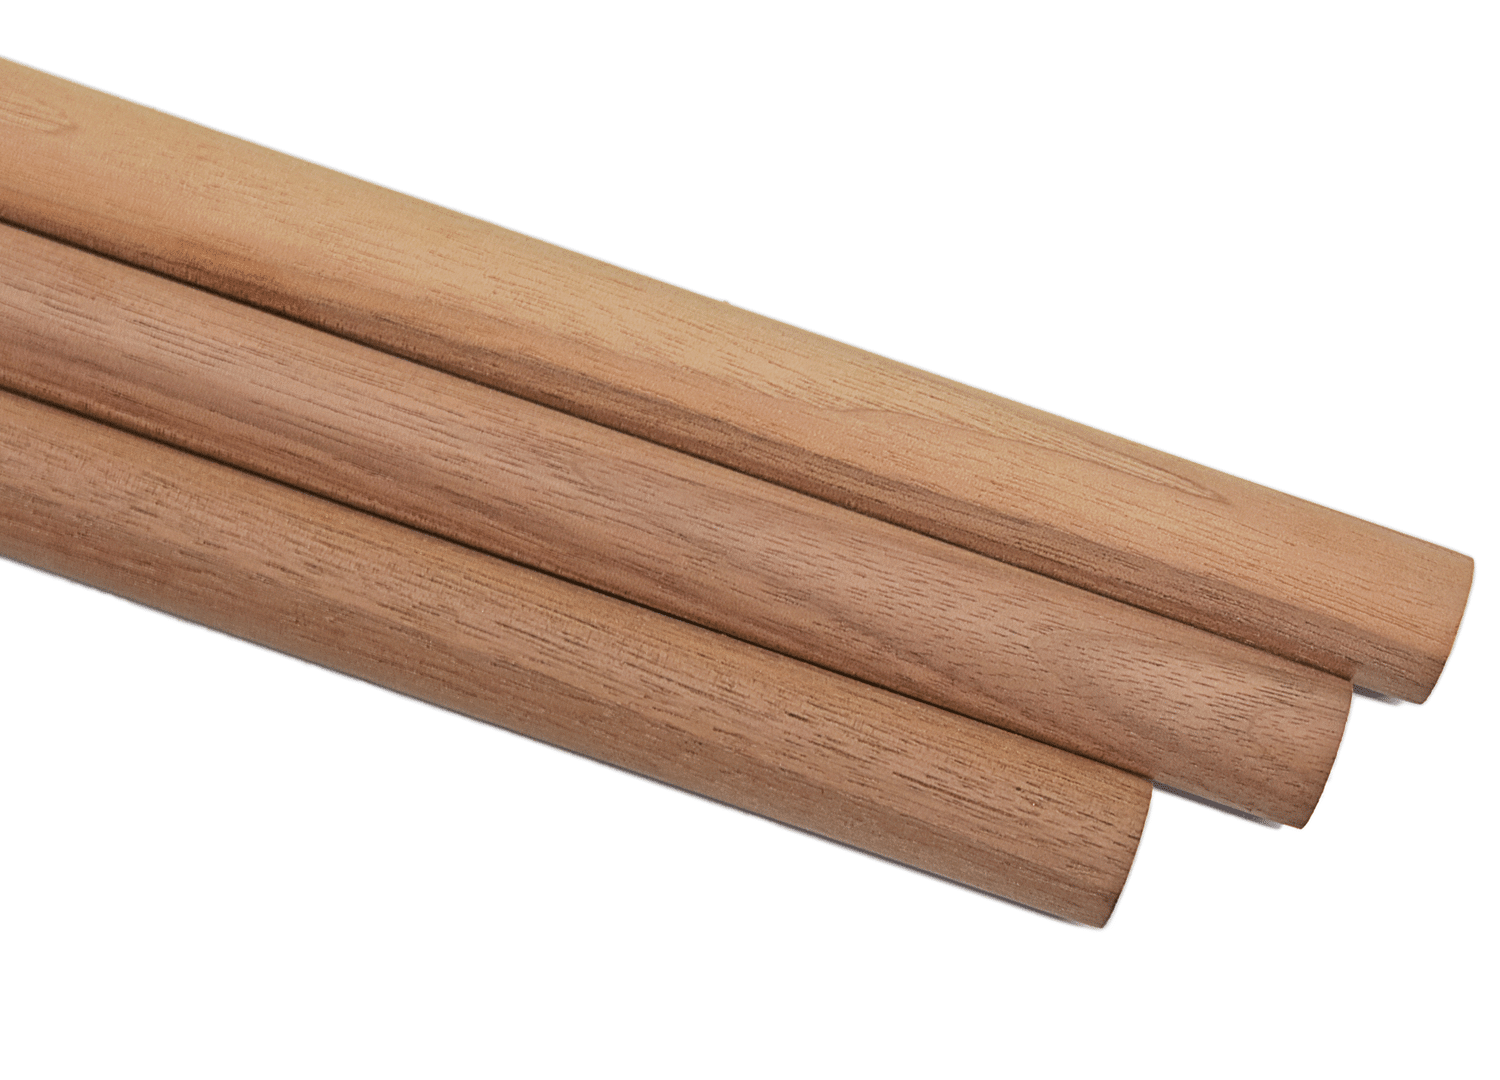 1-1/2 x 36 Wooden Dowel 